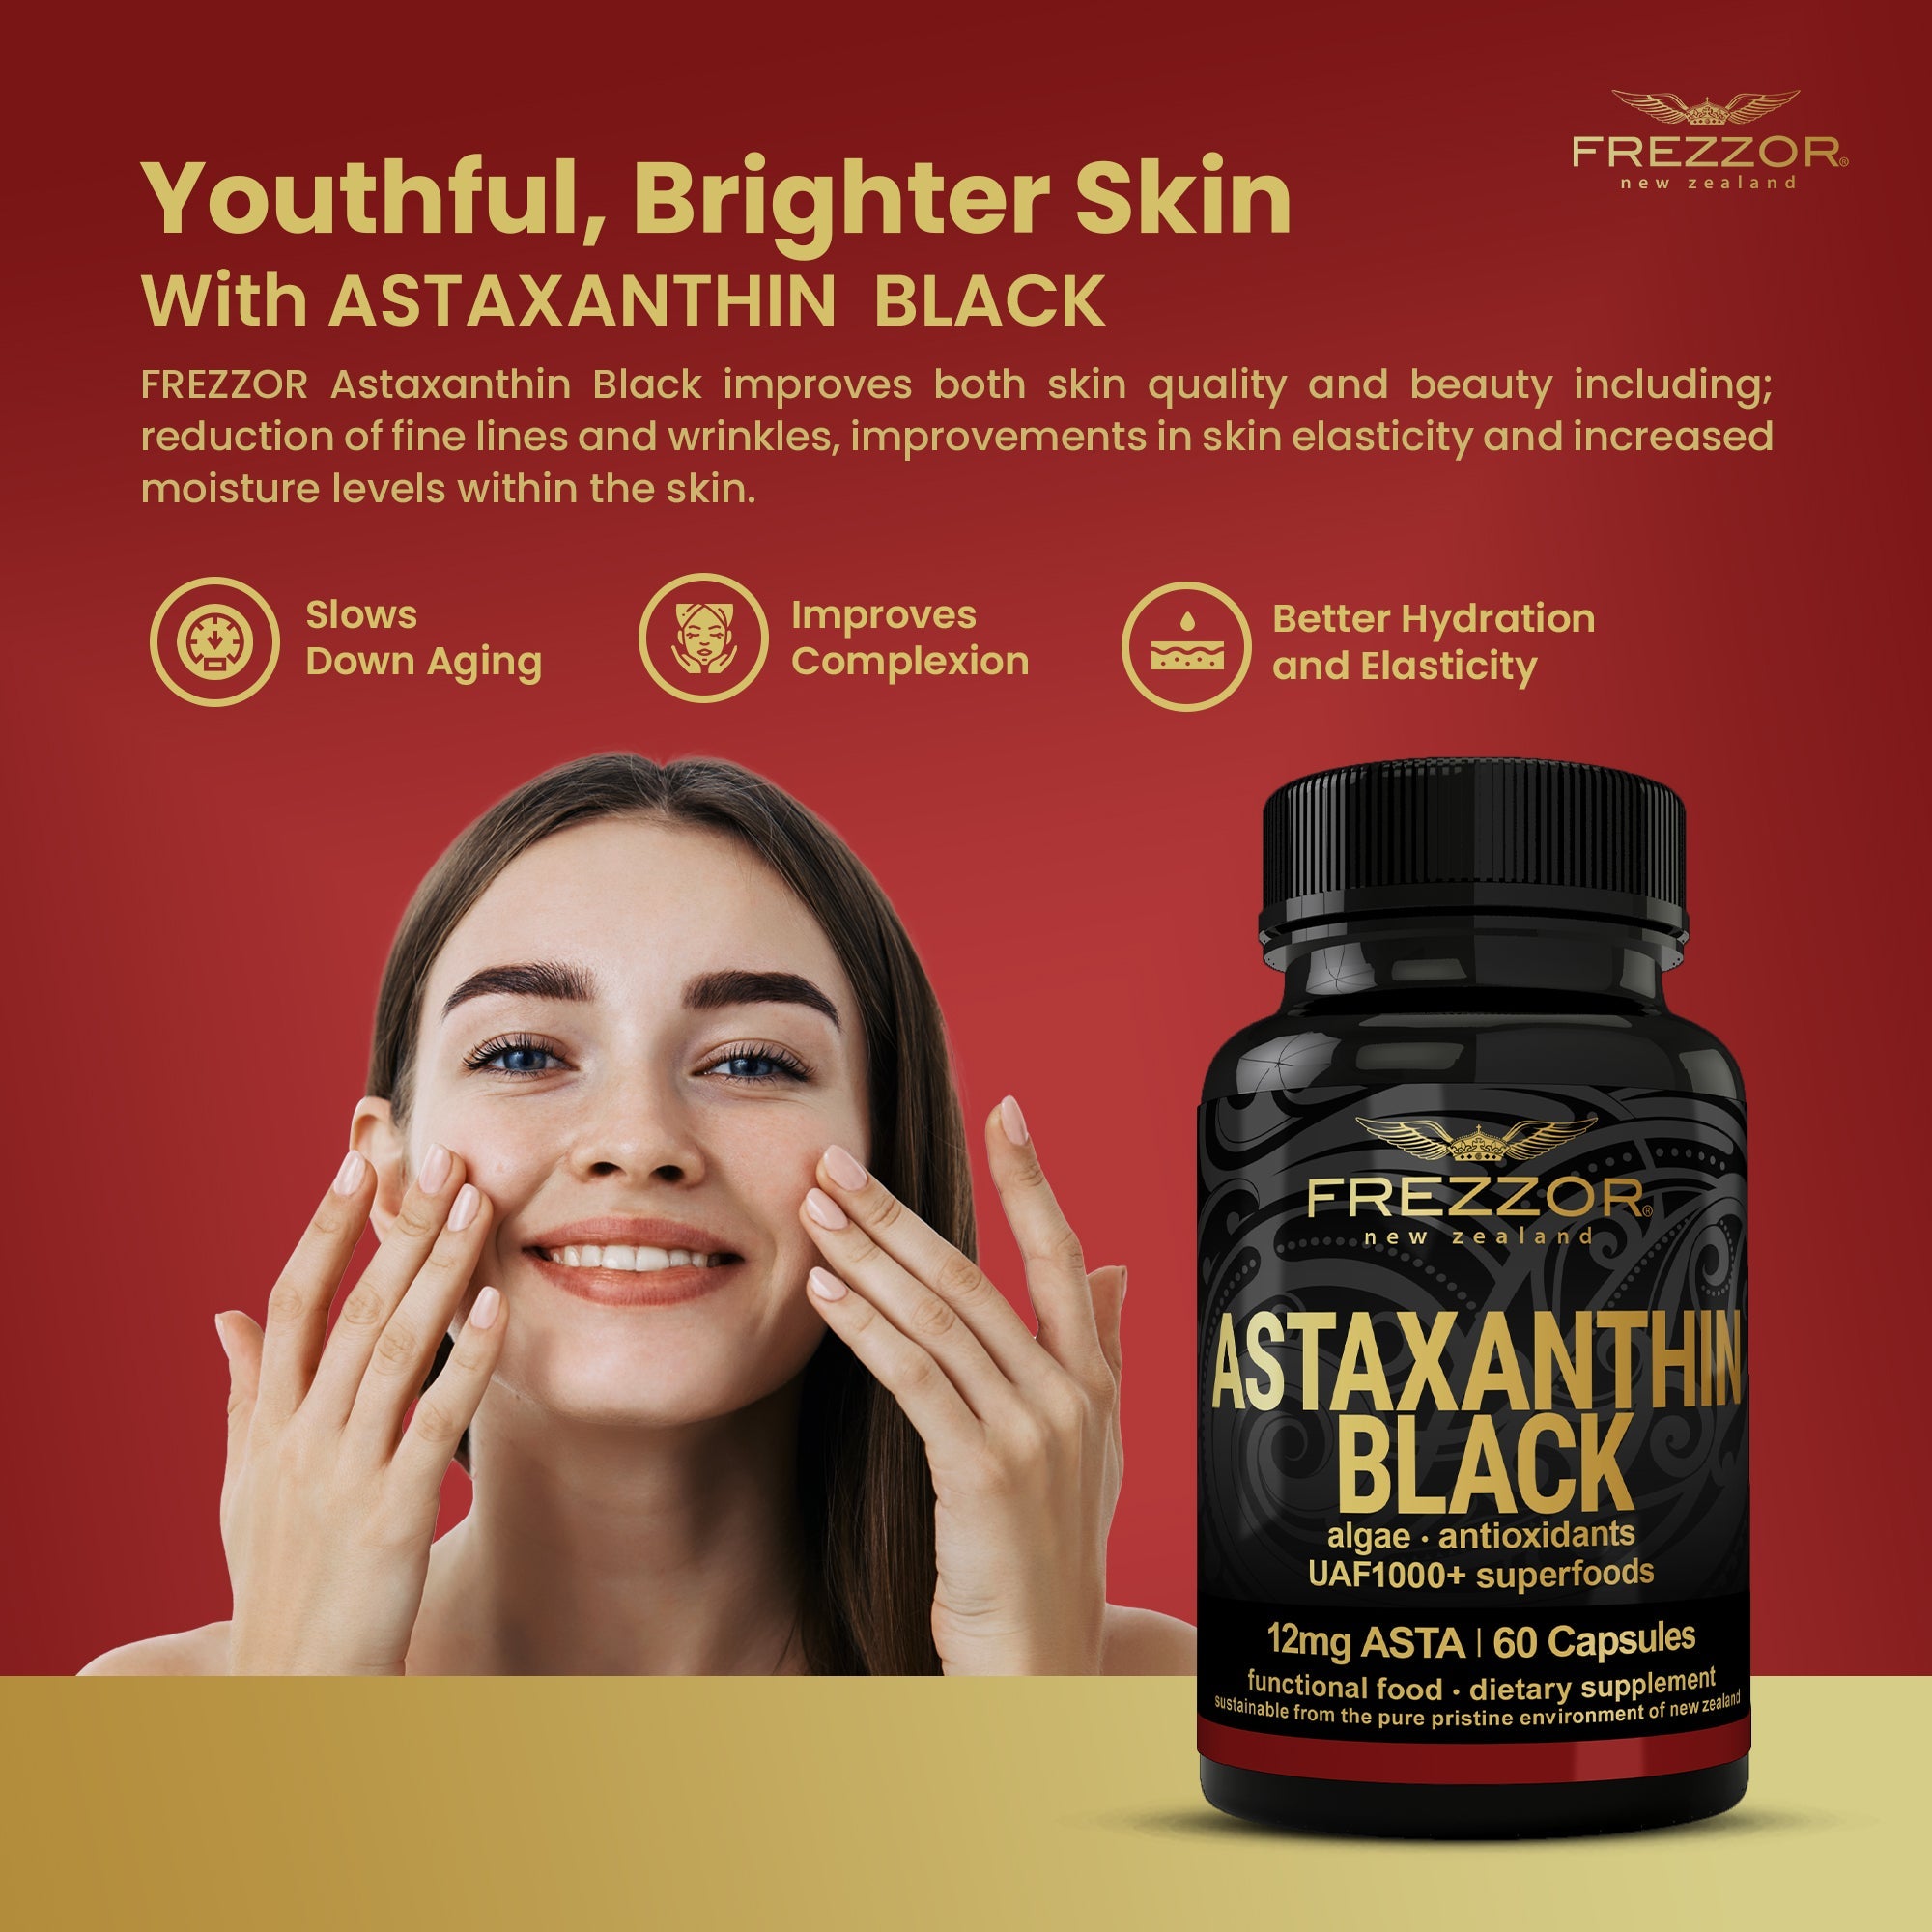 Astaxanthin Black